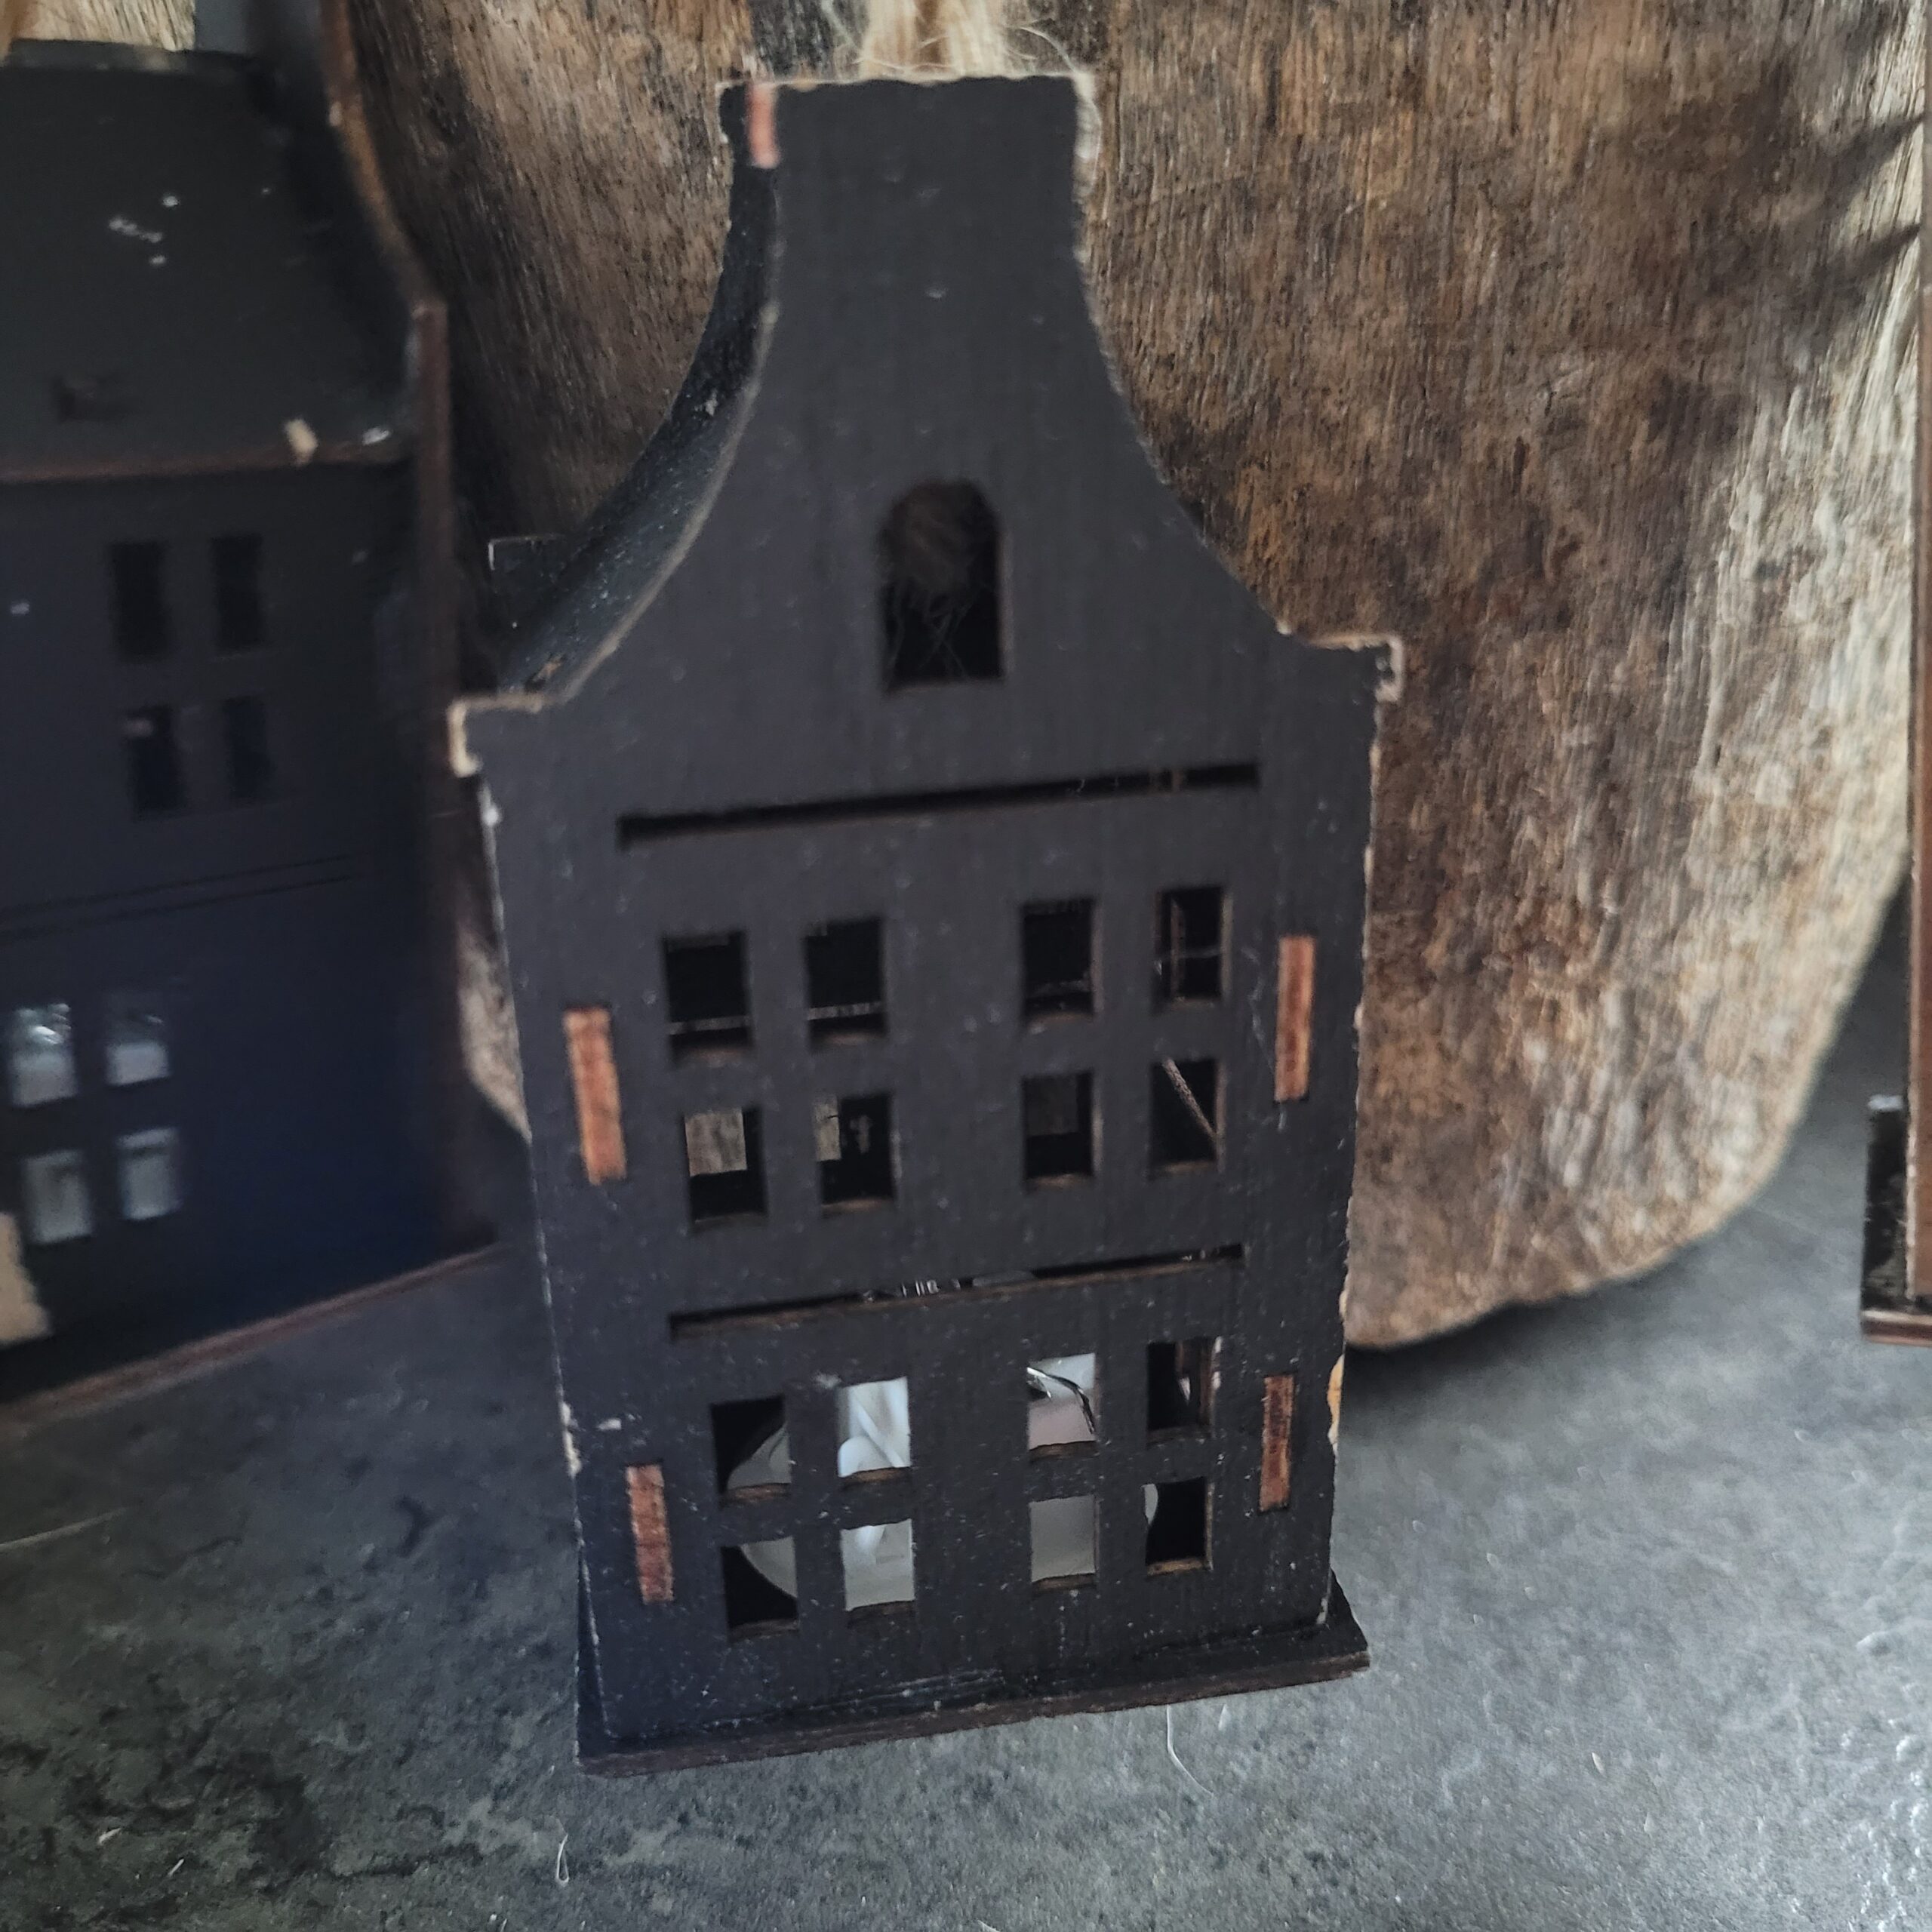 Hollandse huisjes zwart met touw en ledlichtje